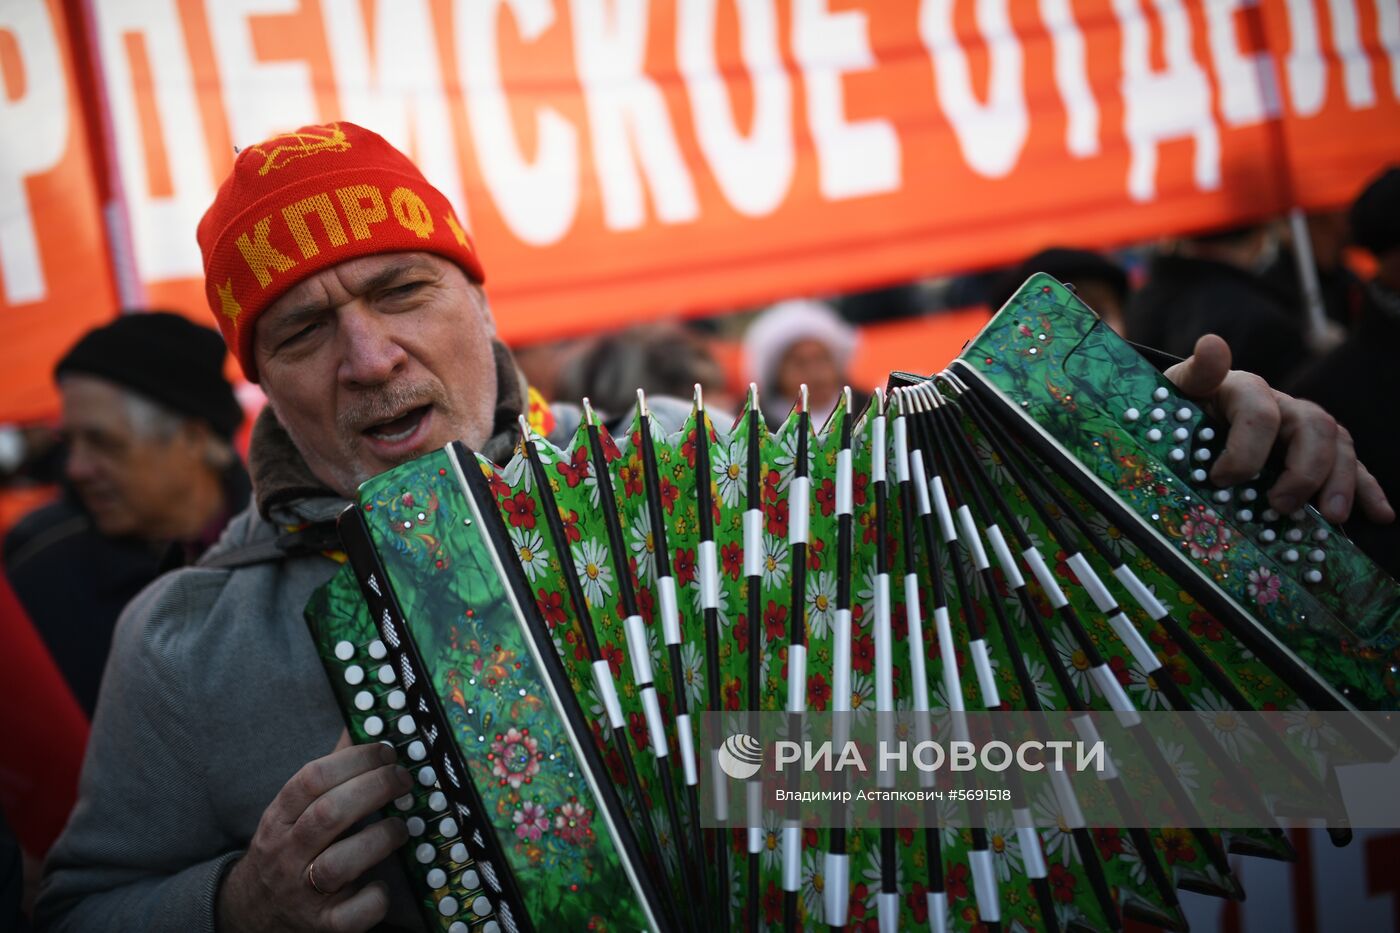 Шествие, посвященное 101-й годовщине Октябрьской революции, в Москве